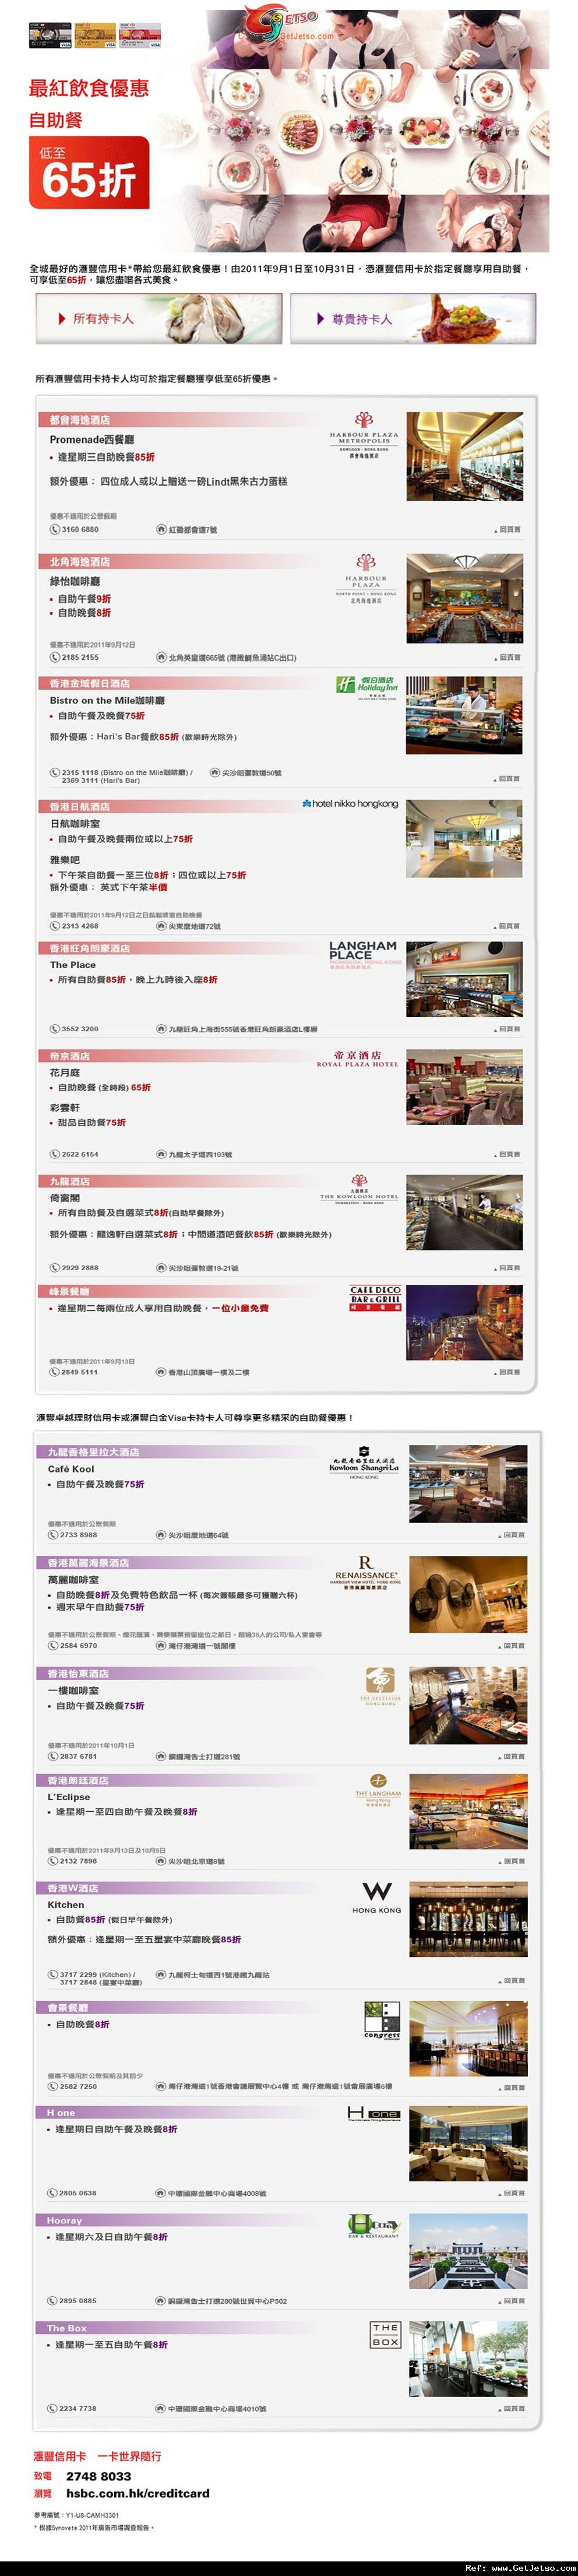 滙豐信用卡享指定酒店自助餐低至65折優惠(至11年10月31日)圖片1